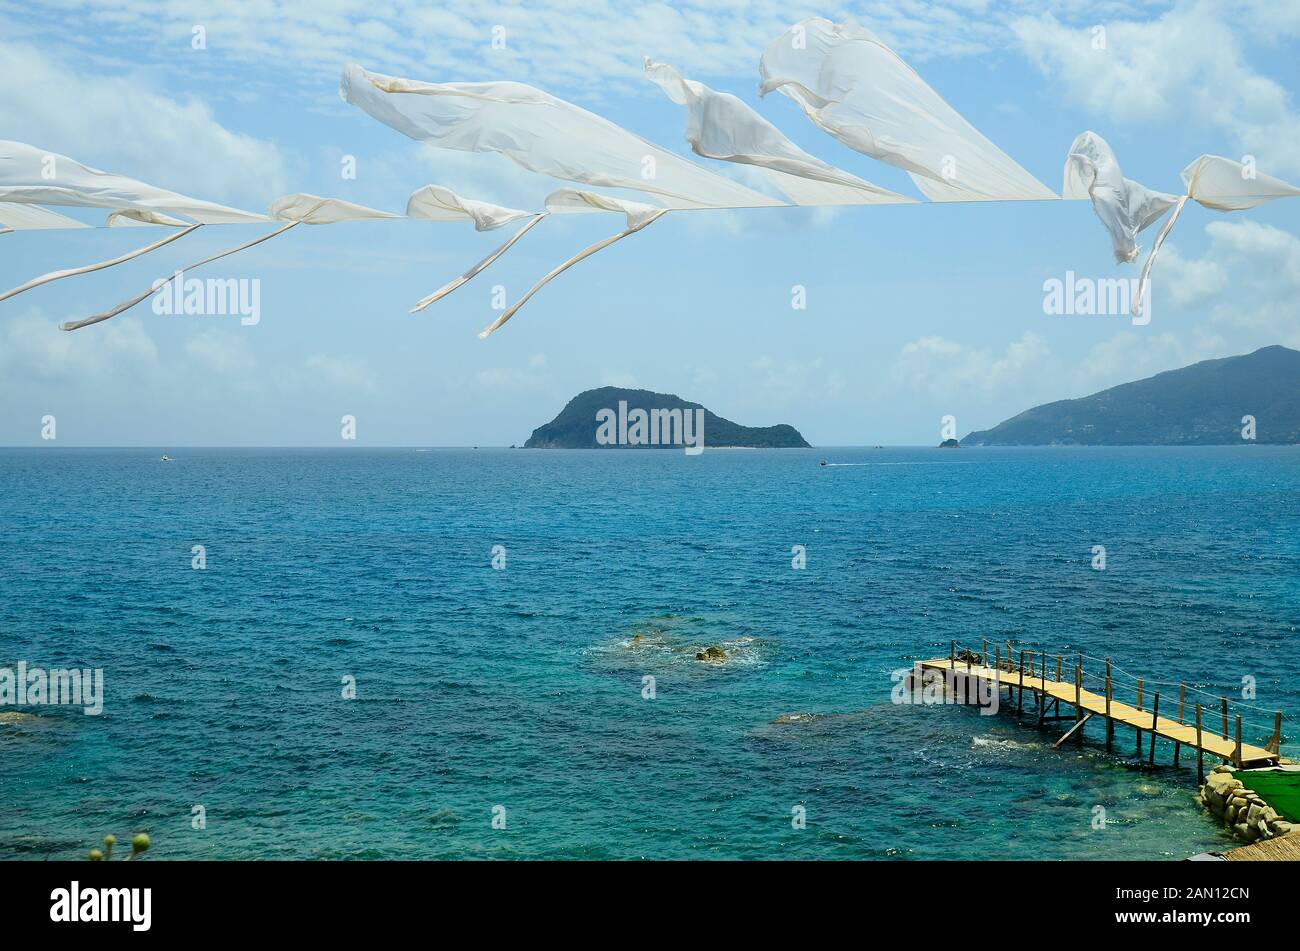 Greece, Zakynthos Island, bathing jetty and view to Marathonissi island aka Turtle island Stock Photo